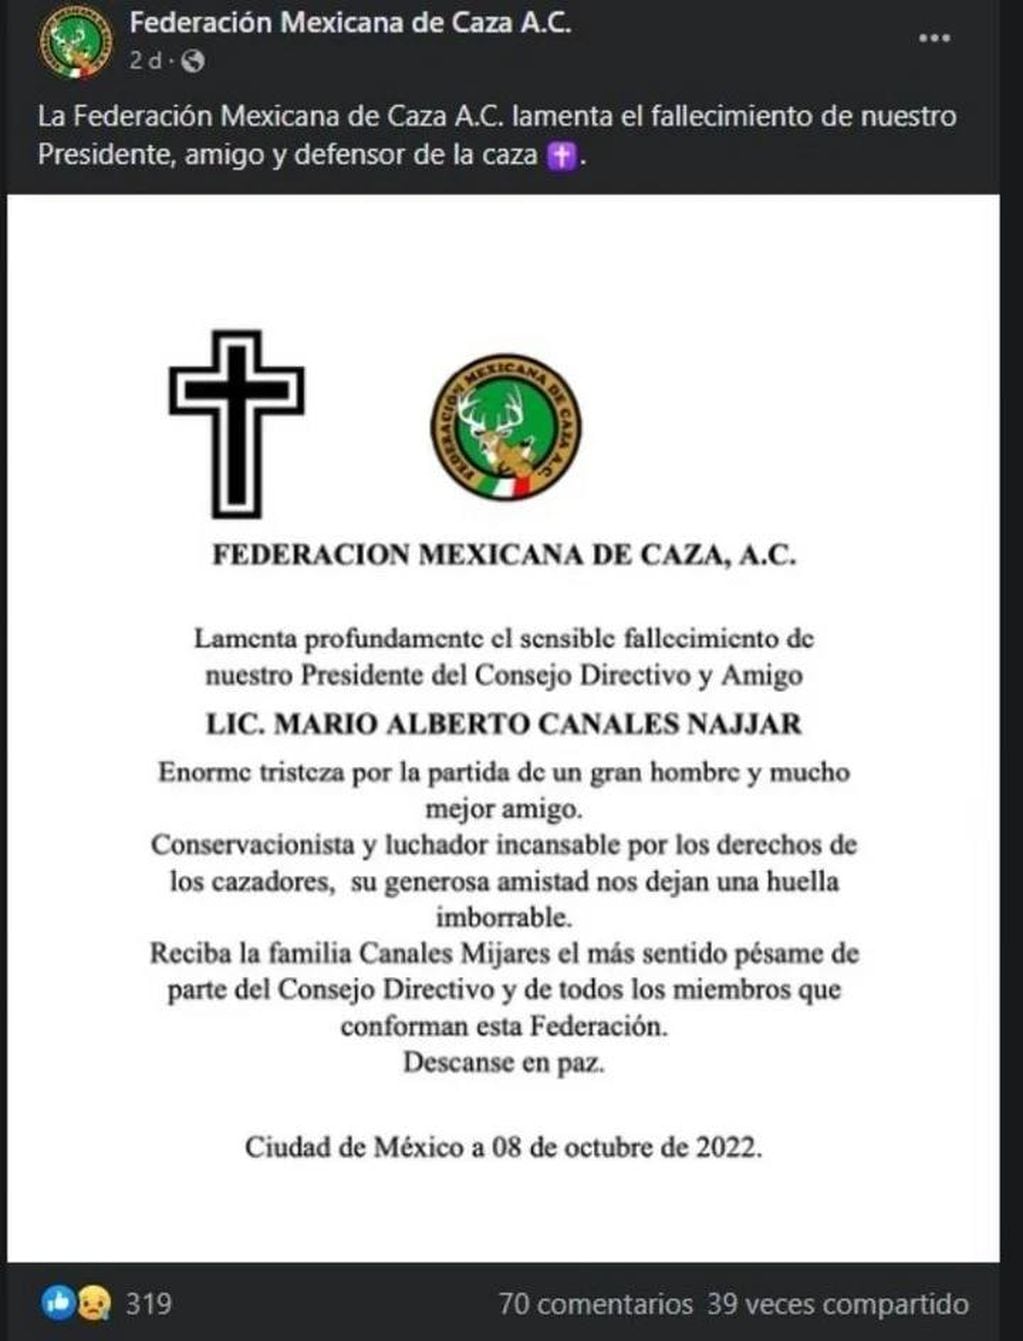 El comunicado que la Federación Mexicana de Caza compartió en redes sociales luego del fallecimiento de su presidente.